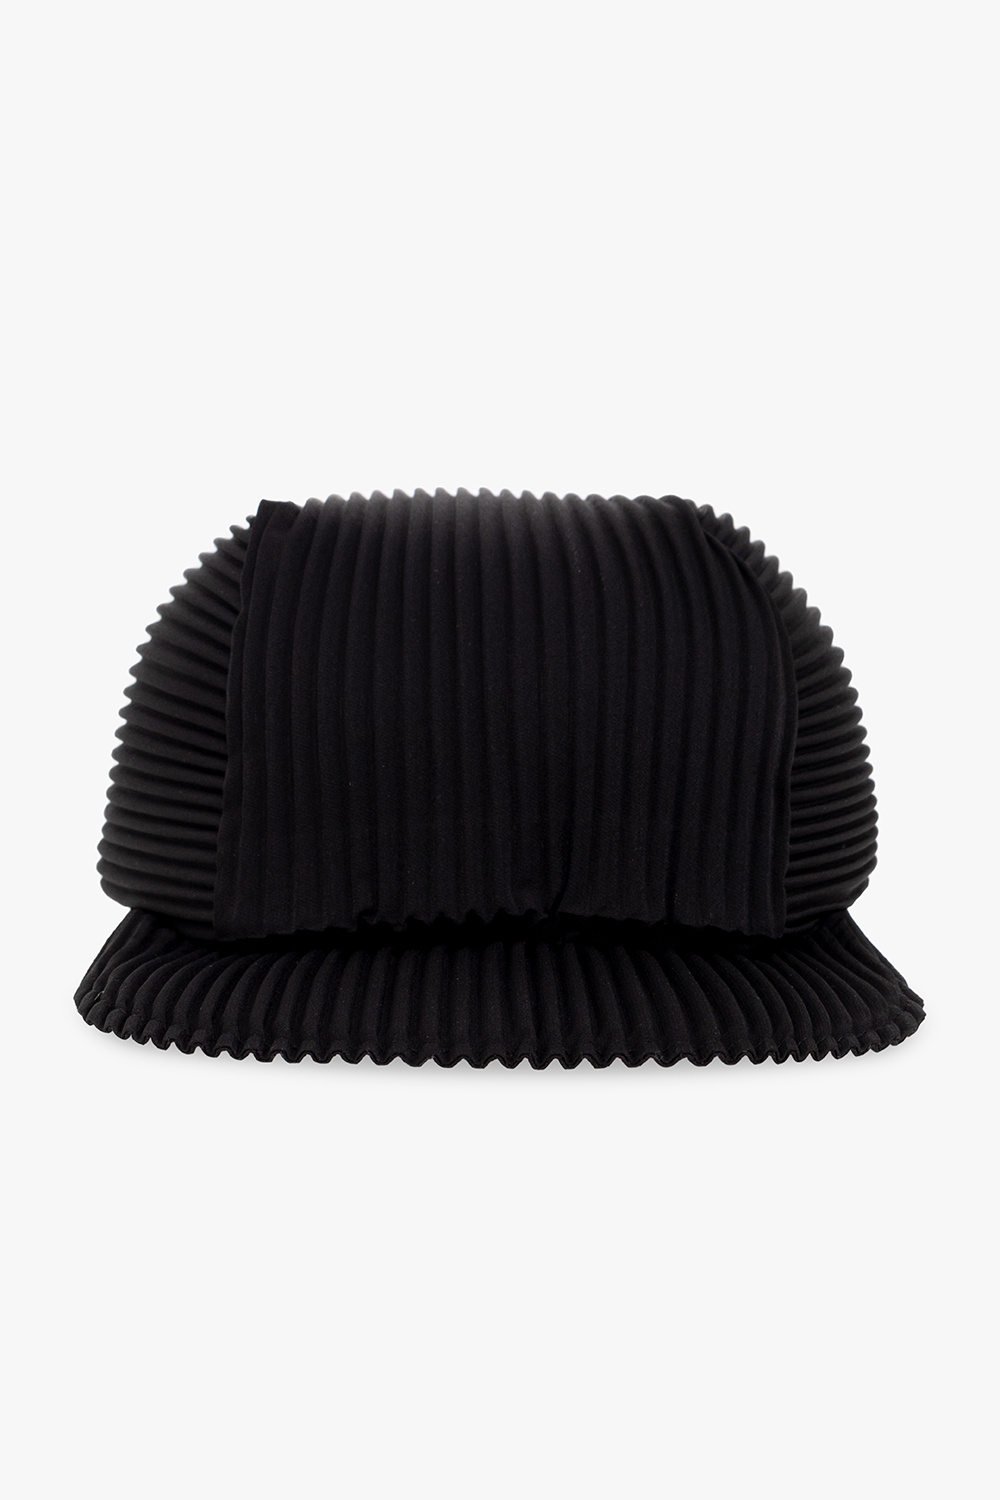 Black robes caps women usb men polo - Men's Relaxed Strapback Hat